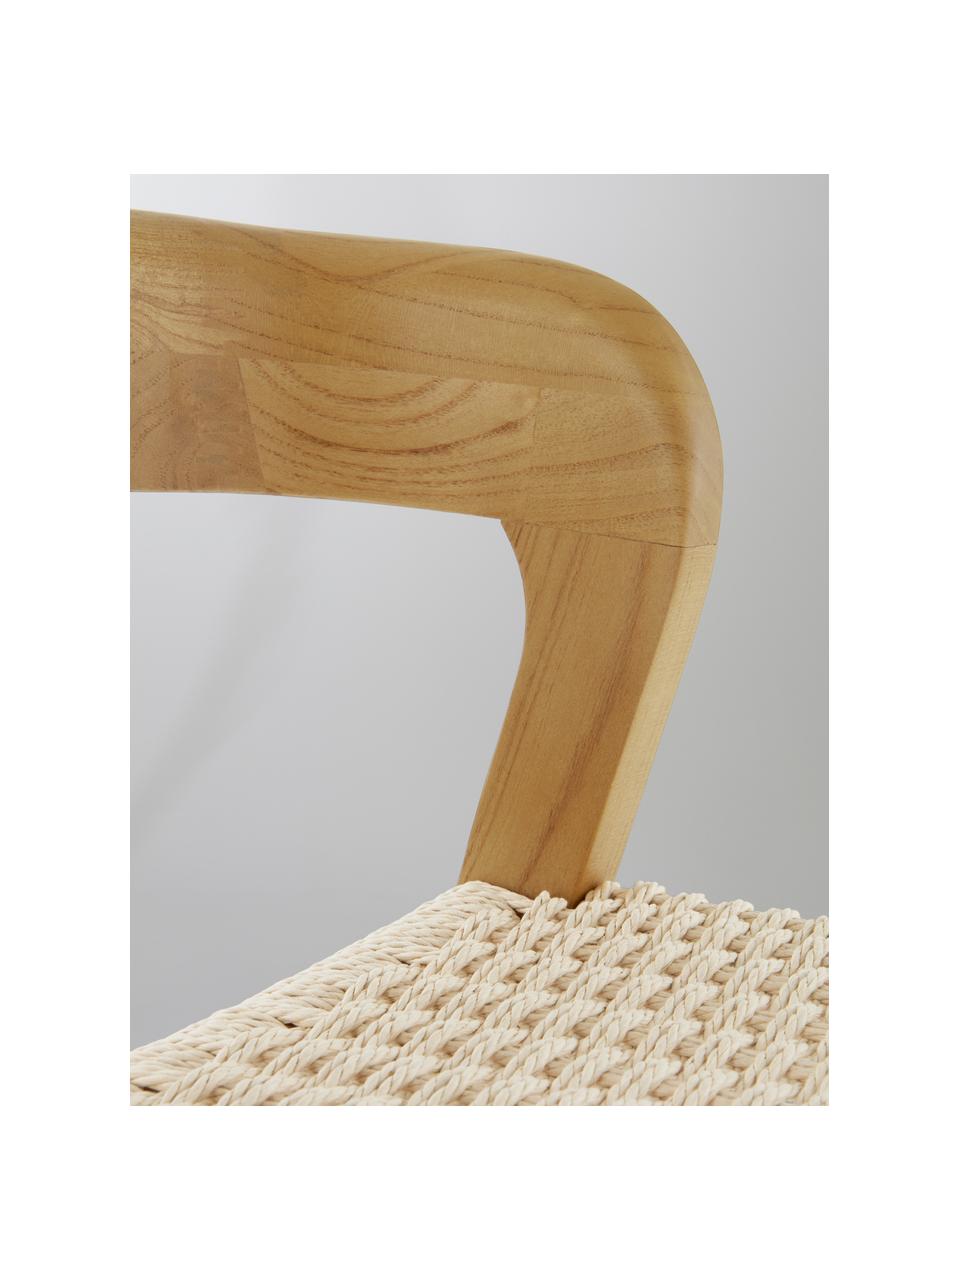 Krzesło barowe Vikdalen, Stelaż: drewno wiązowe, Jasny beżowy, drewno wiązowe, S 45 x W 87 cm